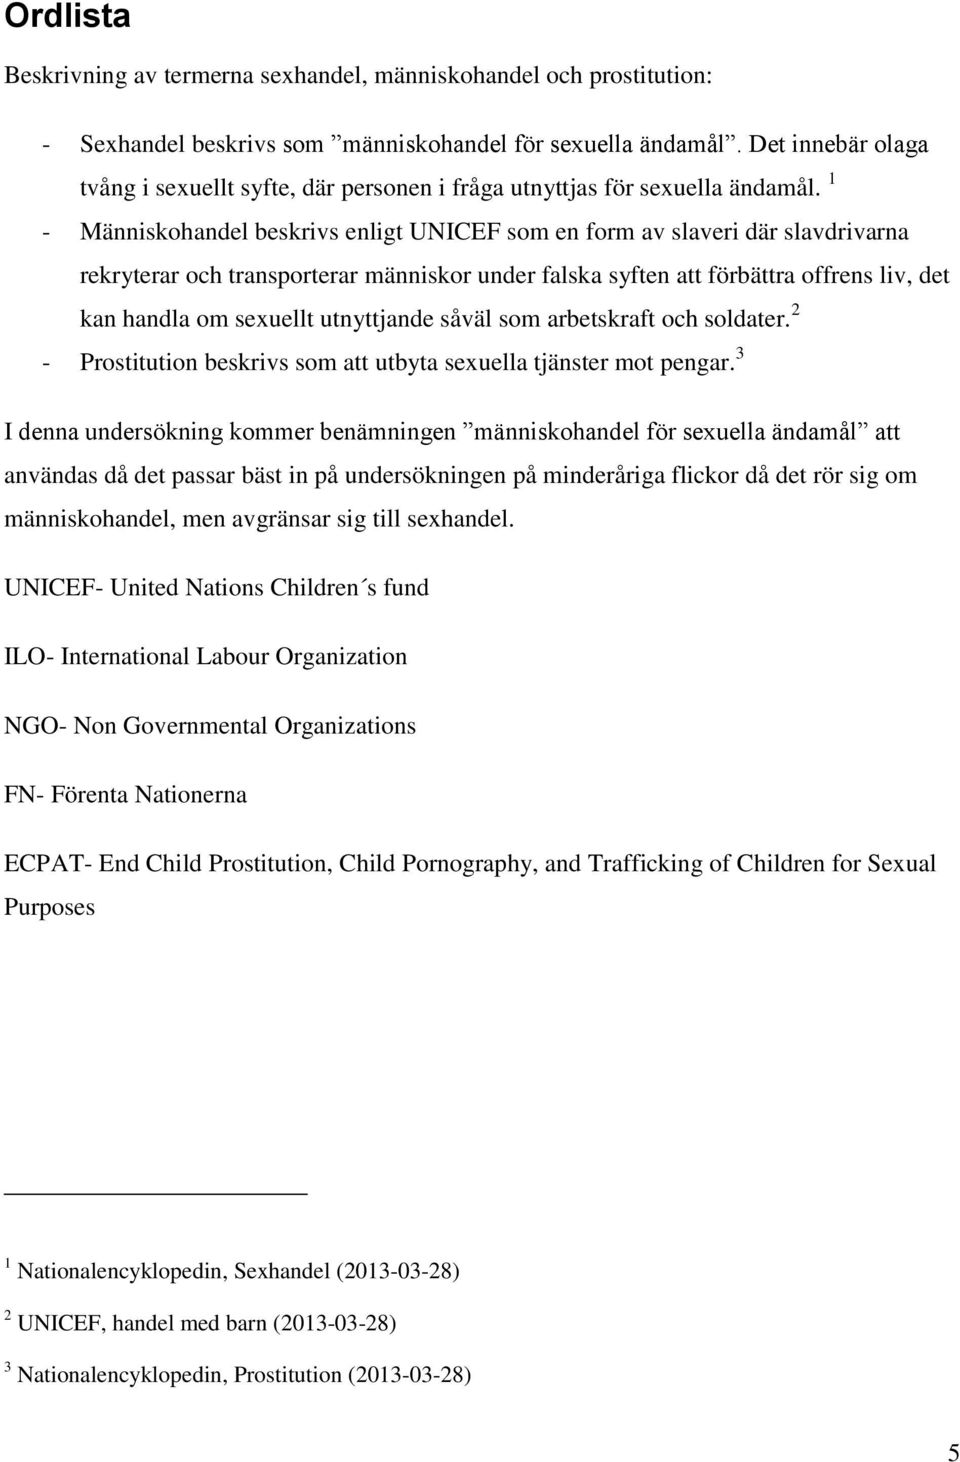 1 - Människohandel beskrivs enligt UNICEF som en form av slaveri där slavdrivarna rekryterar och transporterar människor under falska syften att förbättra offrens liv, det kan handla om sexuellt